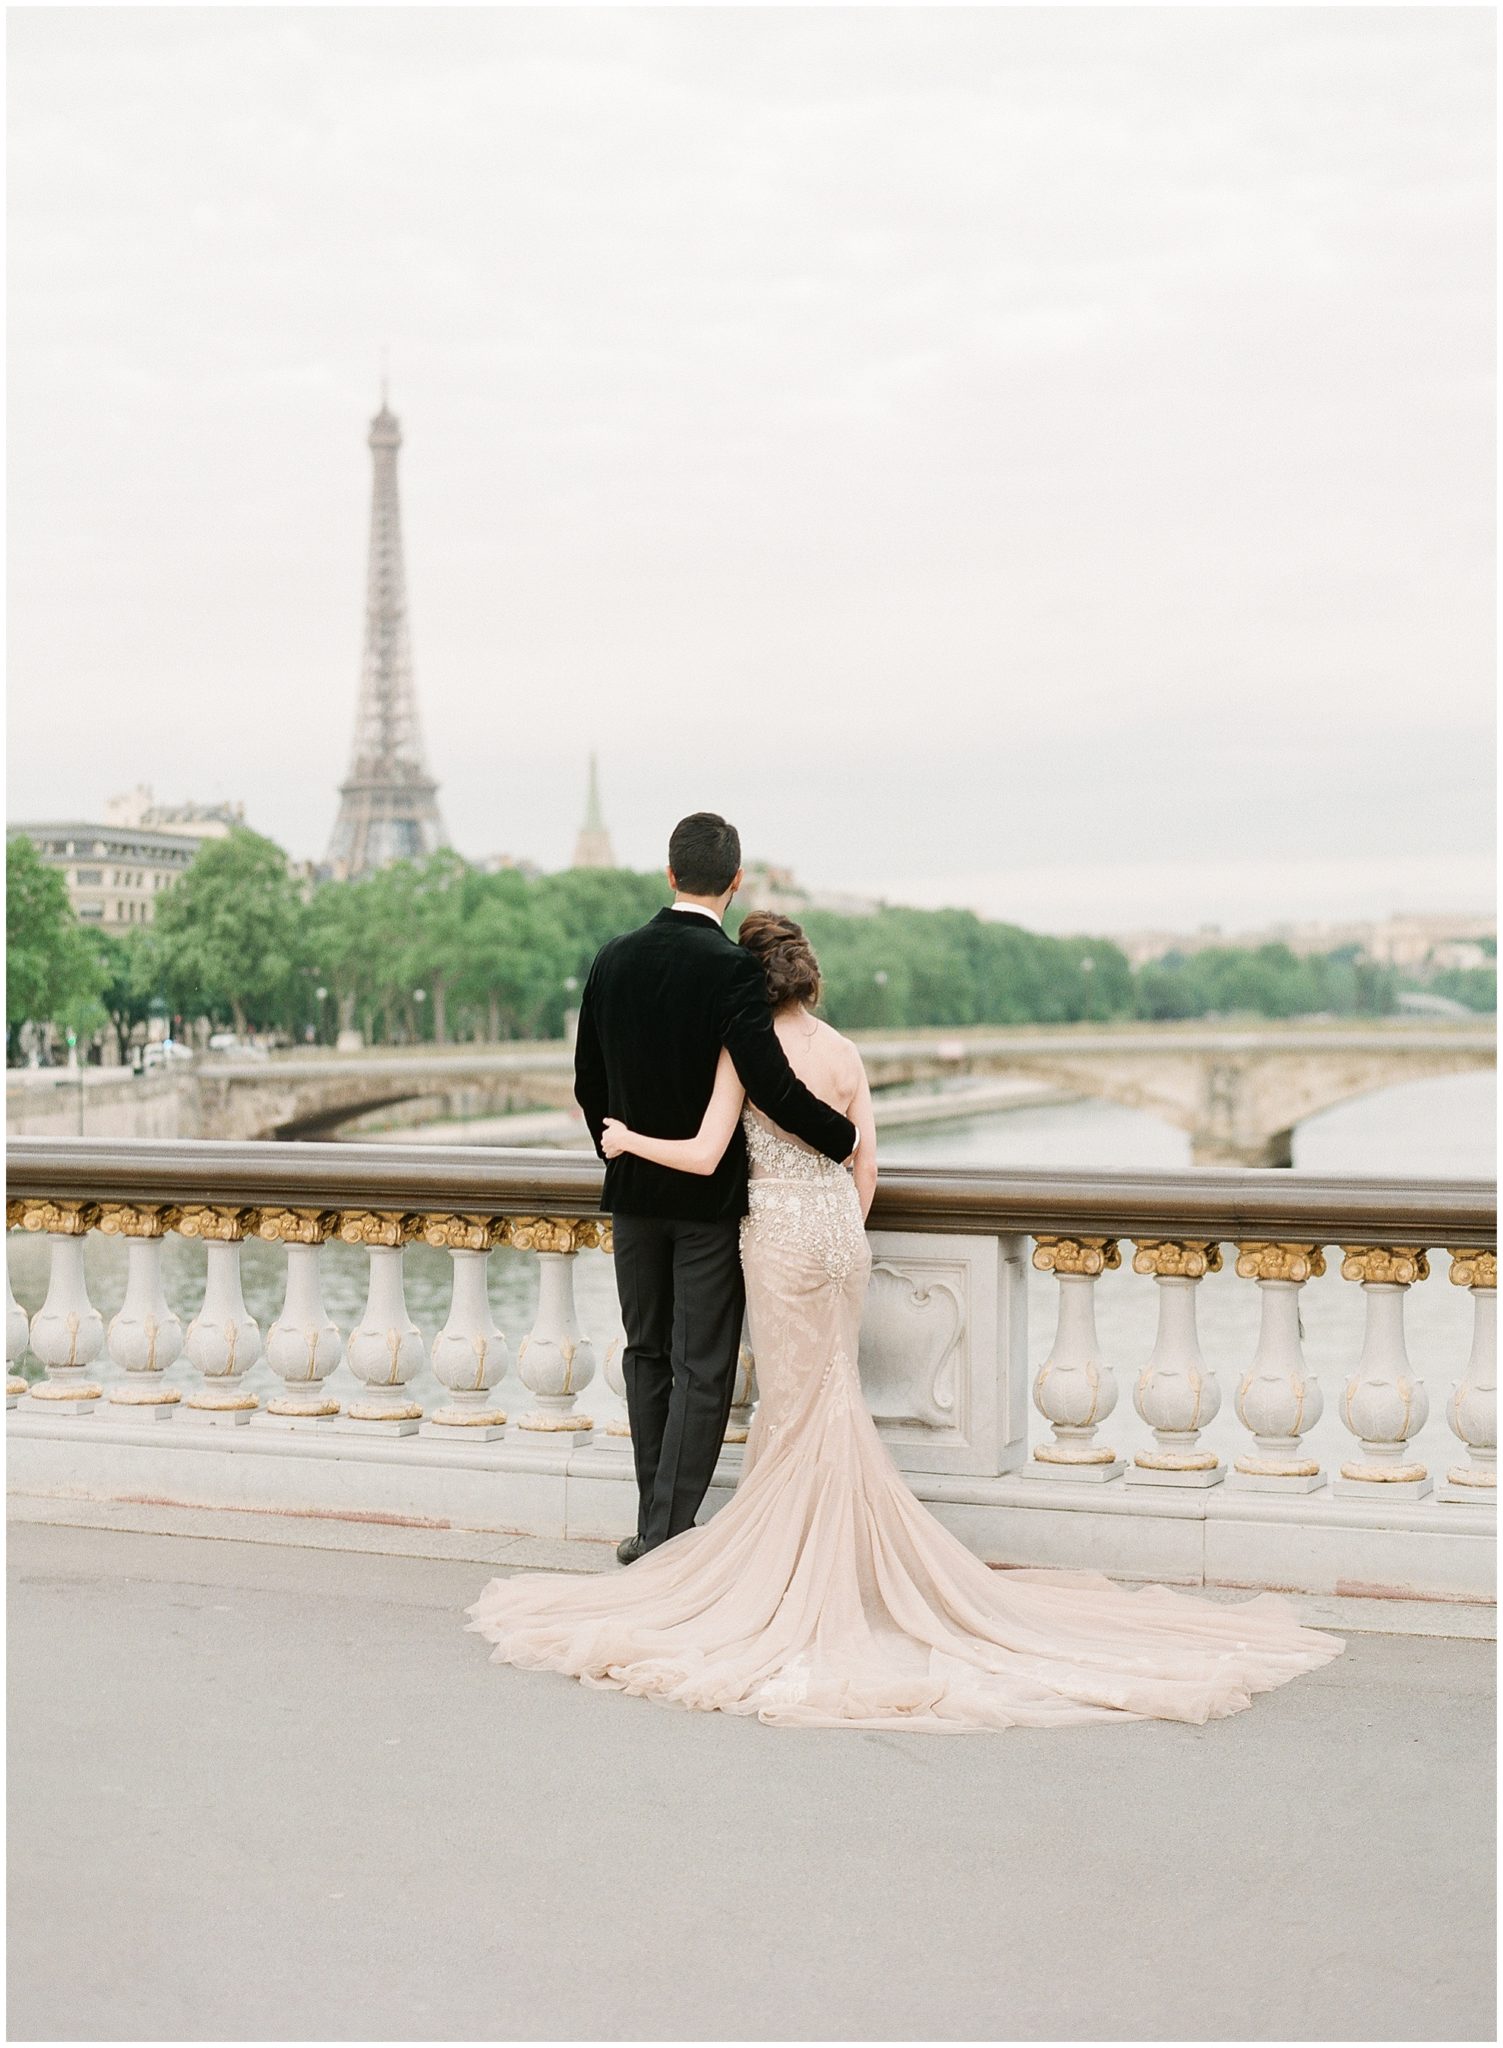 Intimate destination wedding in Paris, captured by Alexandra Vonk